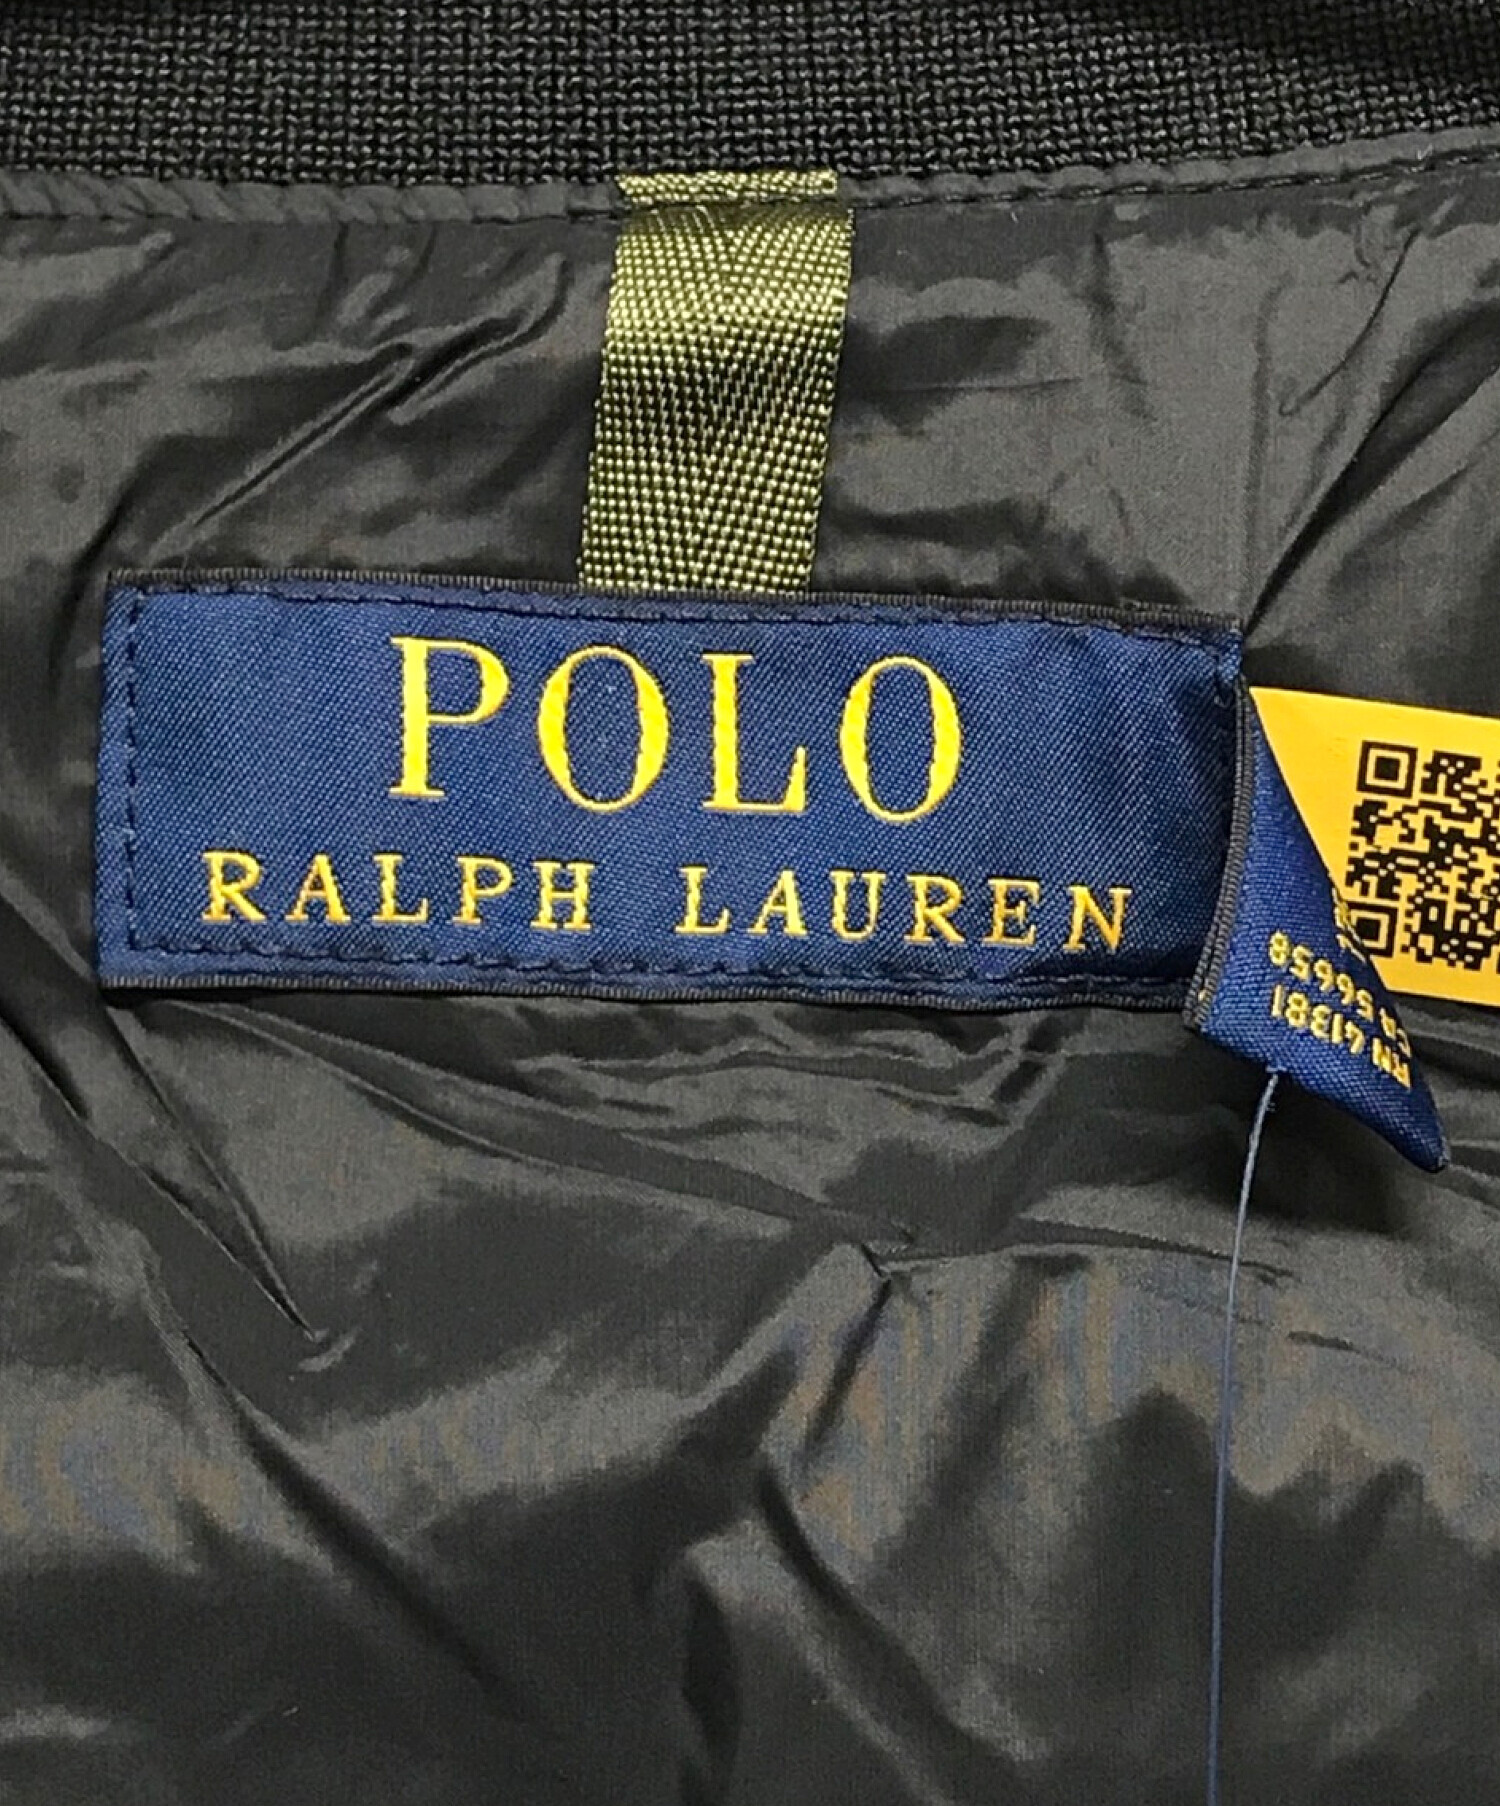 POLO RALPH LAUREN (ポロ・ラルフローレン) ダウンブルゾンジャケット ブラック サイズ:SIZE M 未使用品